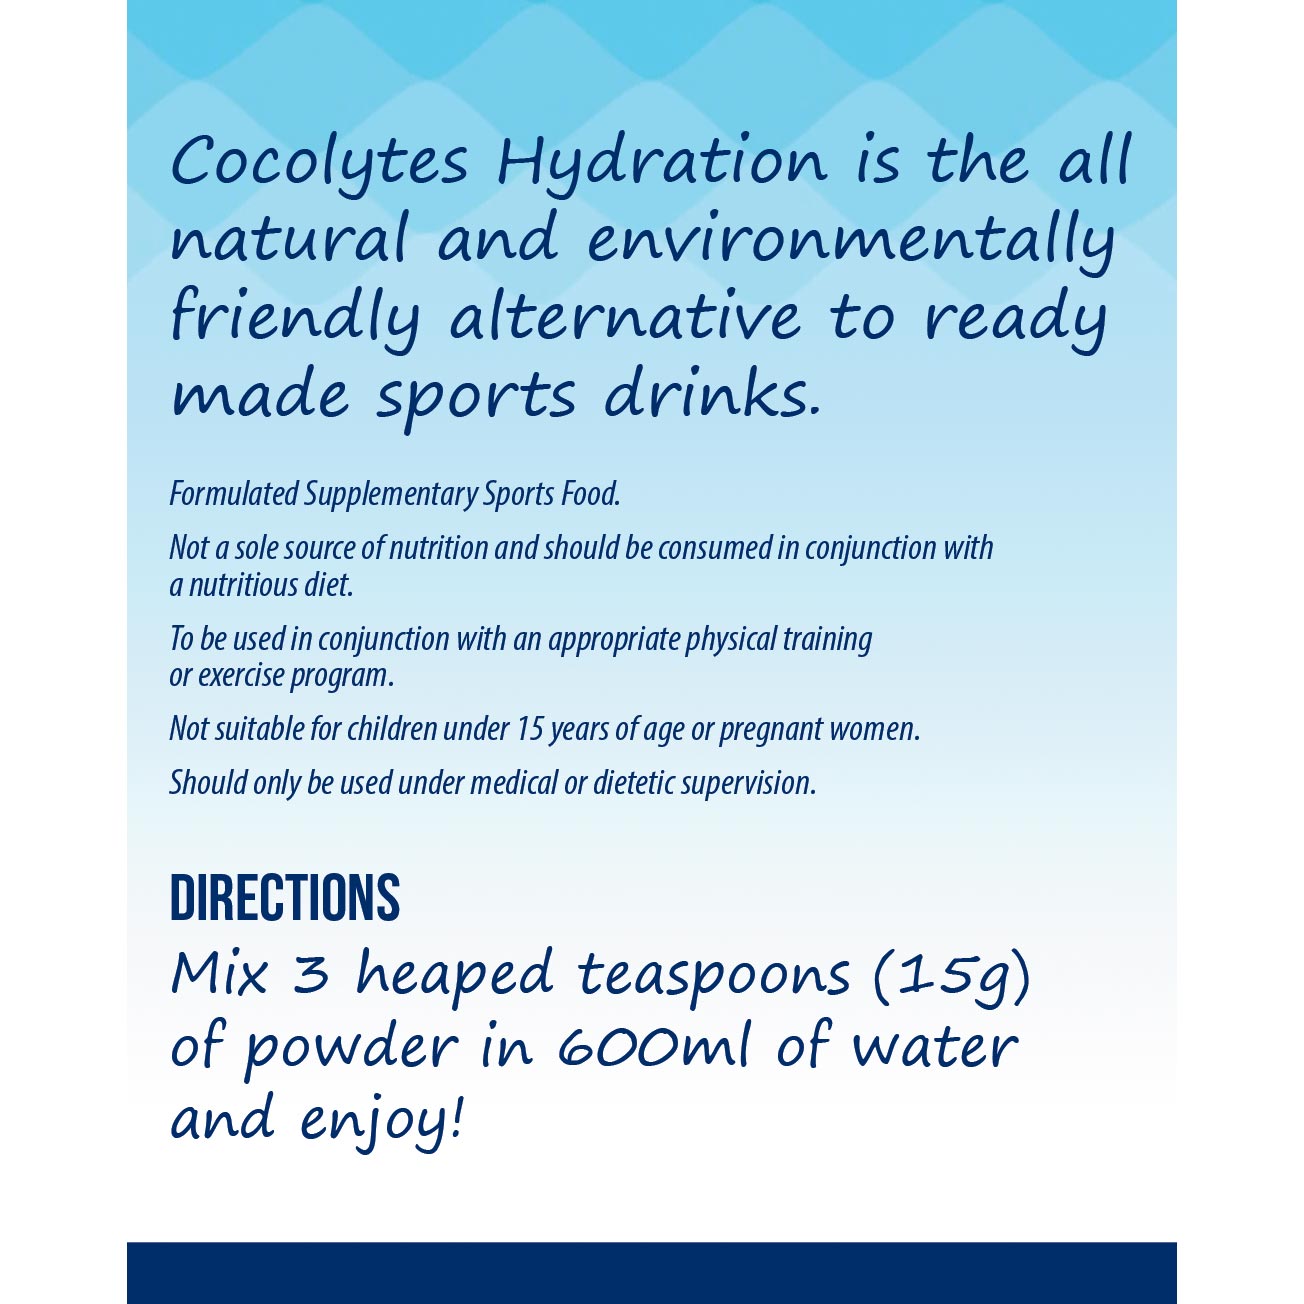 Coco Earth Bio-Active Cocolytes Hydration 200g